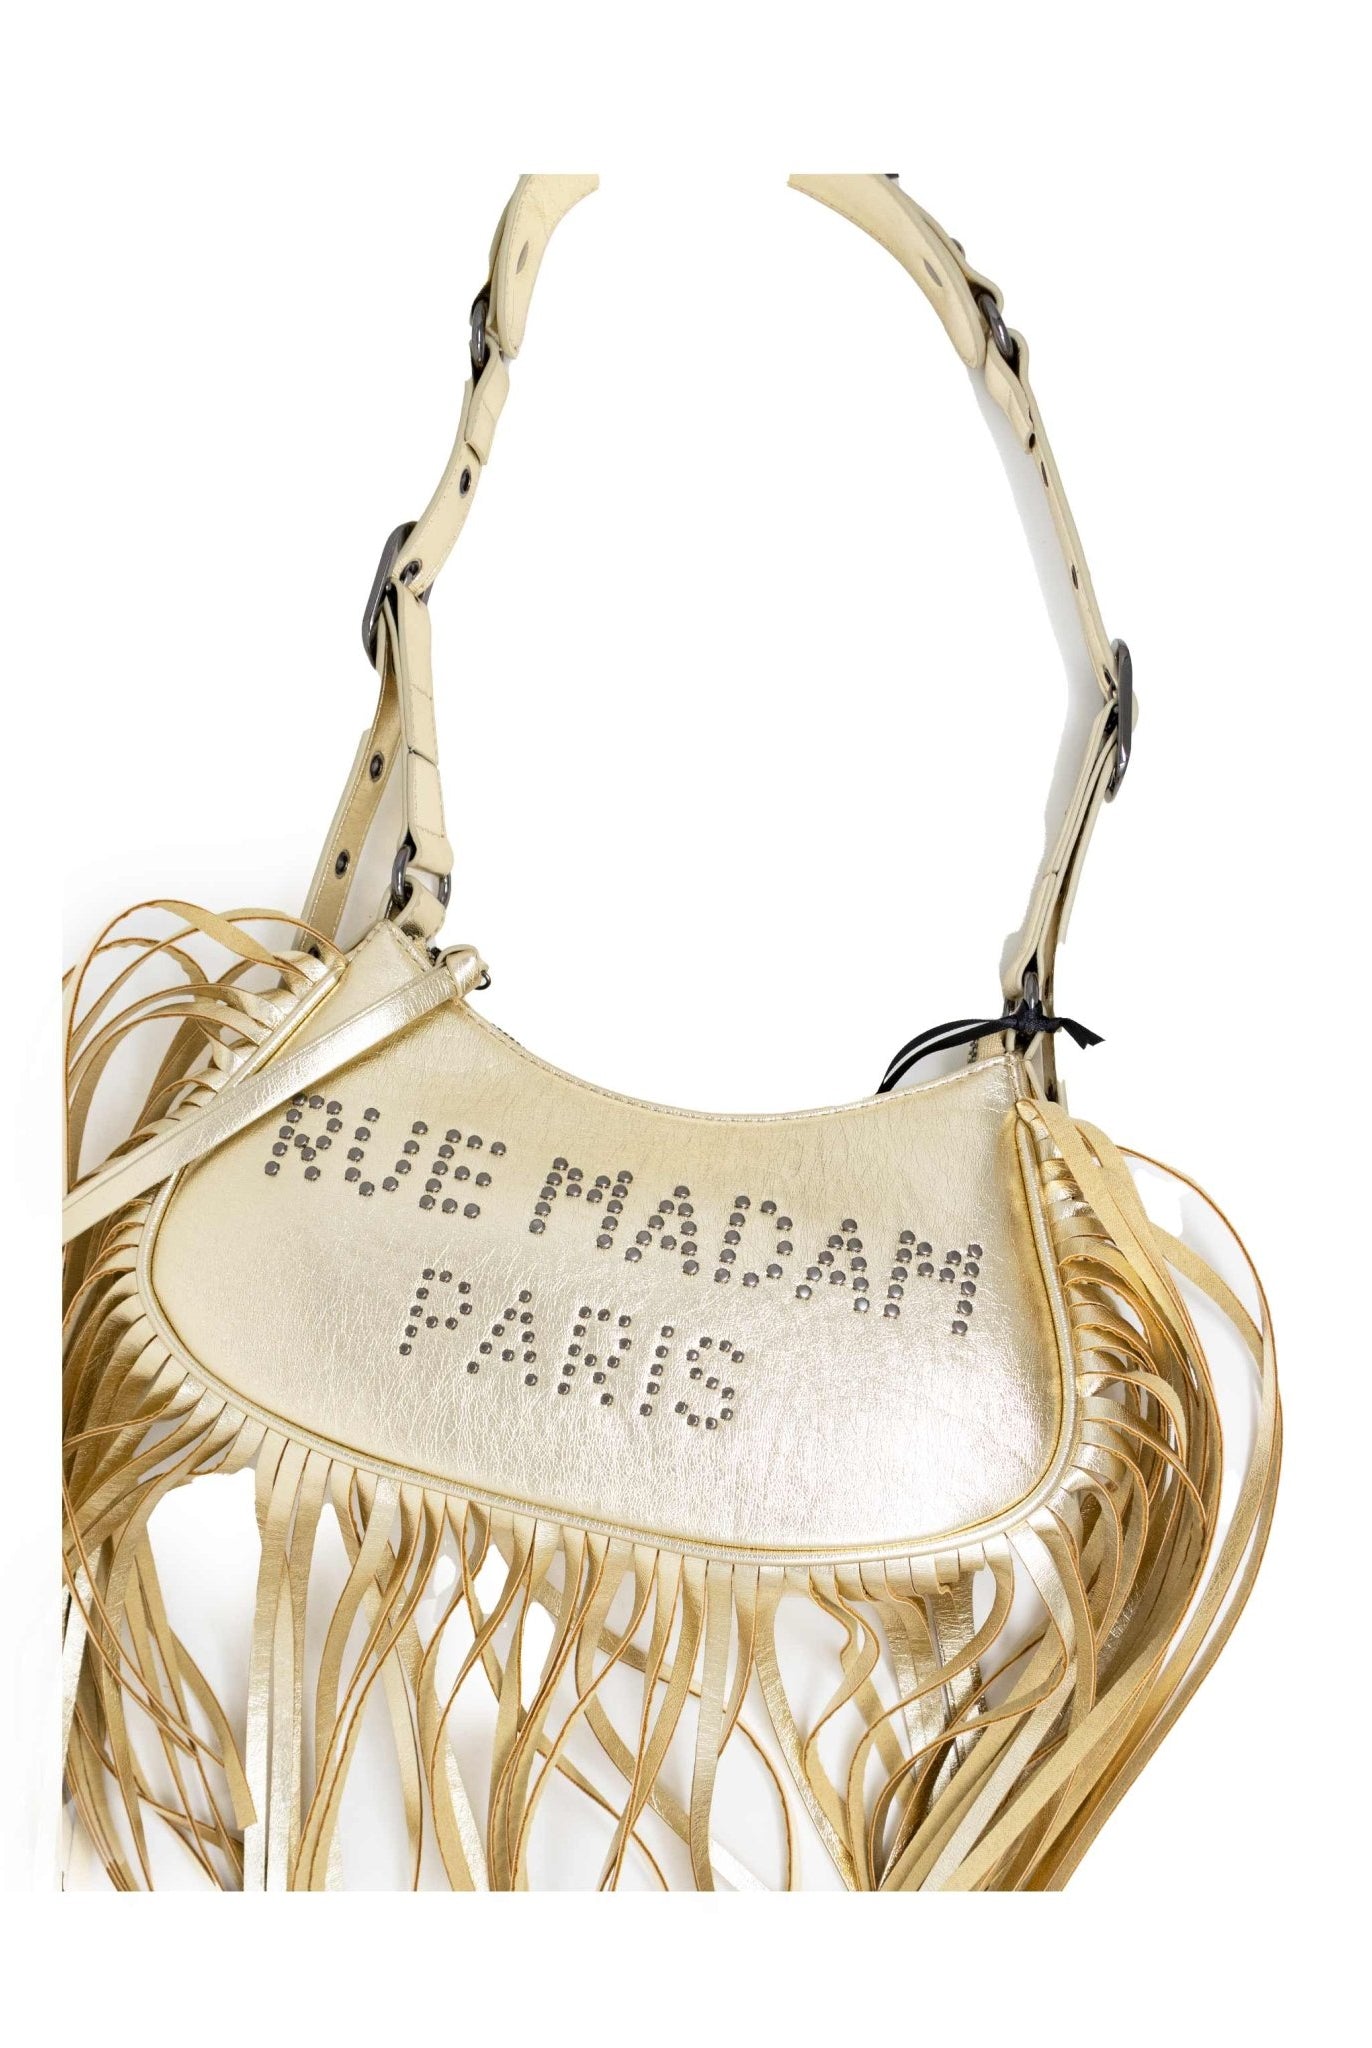 Borsa mezzaluna oro con frange- Rue madam paris -Giorgioquinto